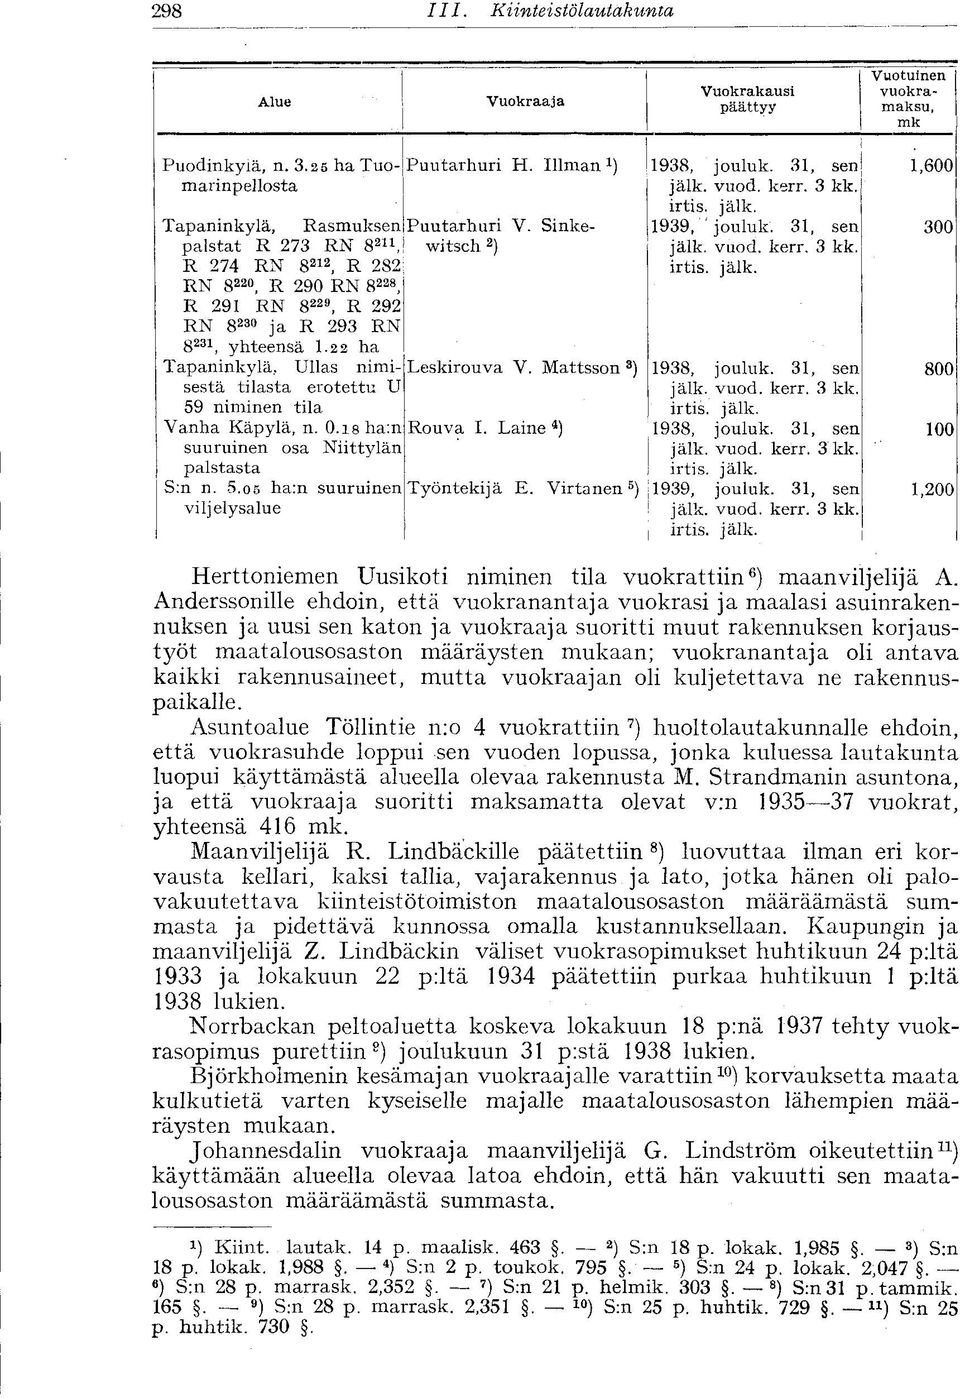 Ullas nimisestä tilasta erotettu U 59 niminen tila Vanha Käpylä, n. 0.isha:n suuruinen osa Niittylän palstasta S:n n. 5.05 ha:n suuruinen viljelysalue Puutarhuri H. Illman 1 Puutarhuri V.